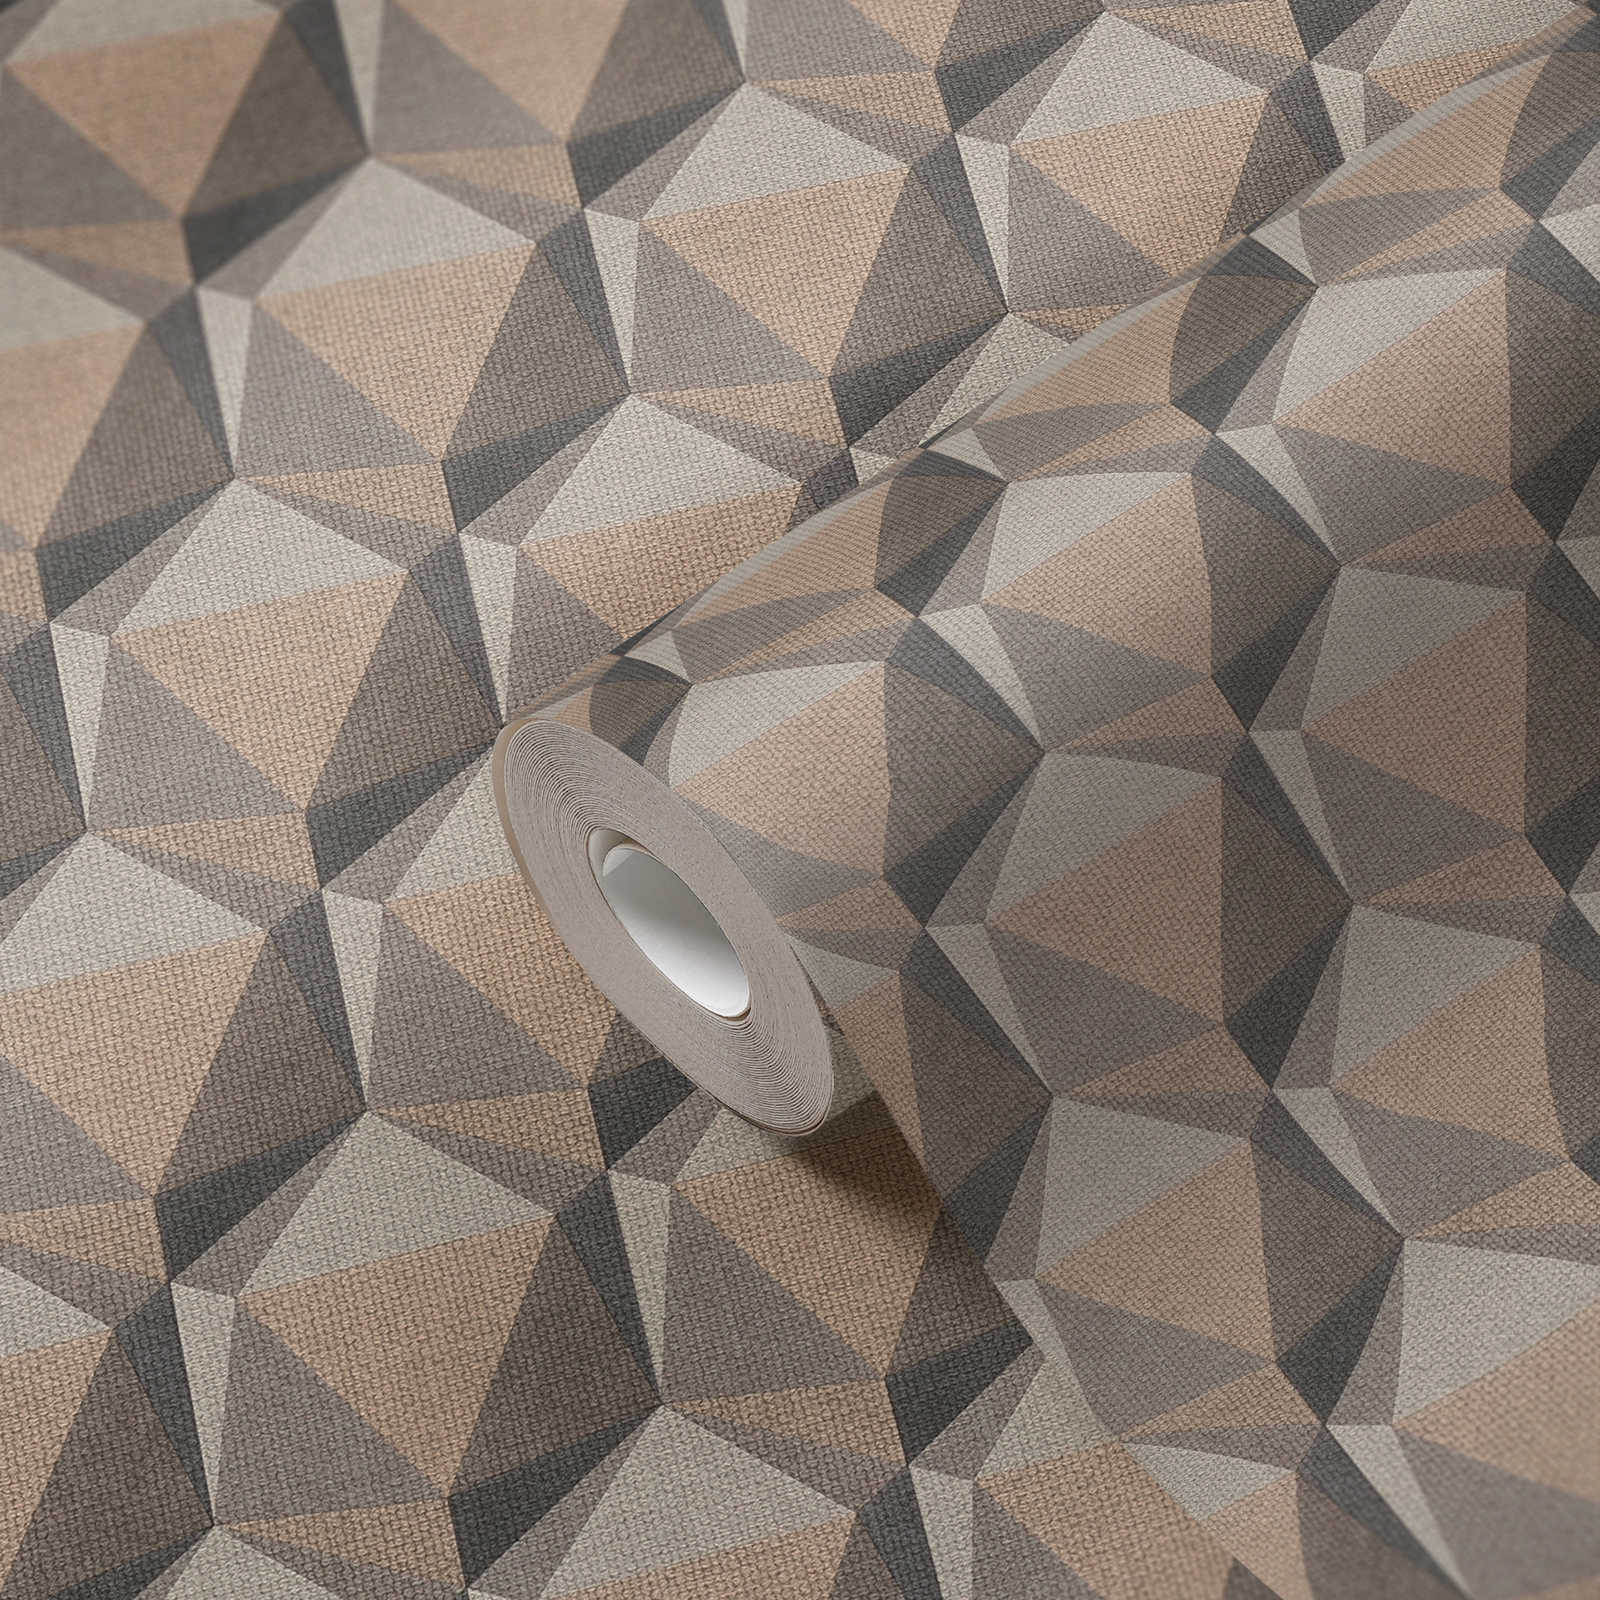             3D-behang met grafisch patroon in retrolook - beige, crème, grijs
        